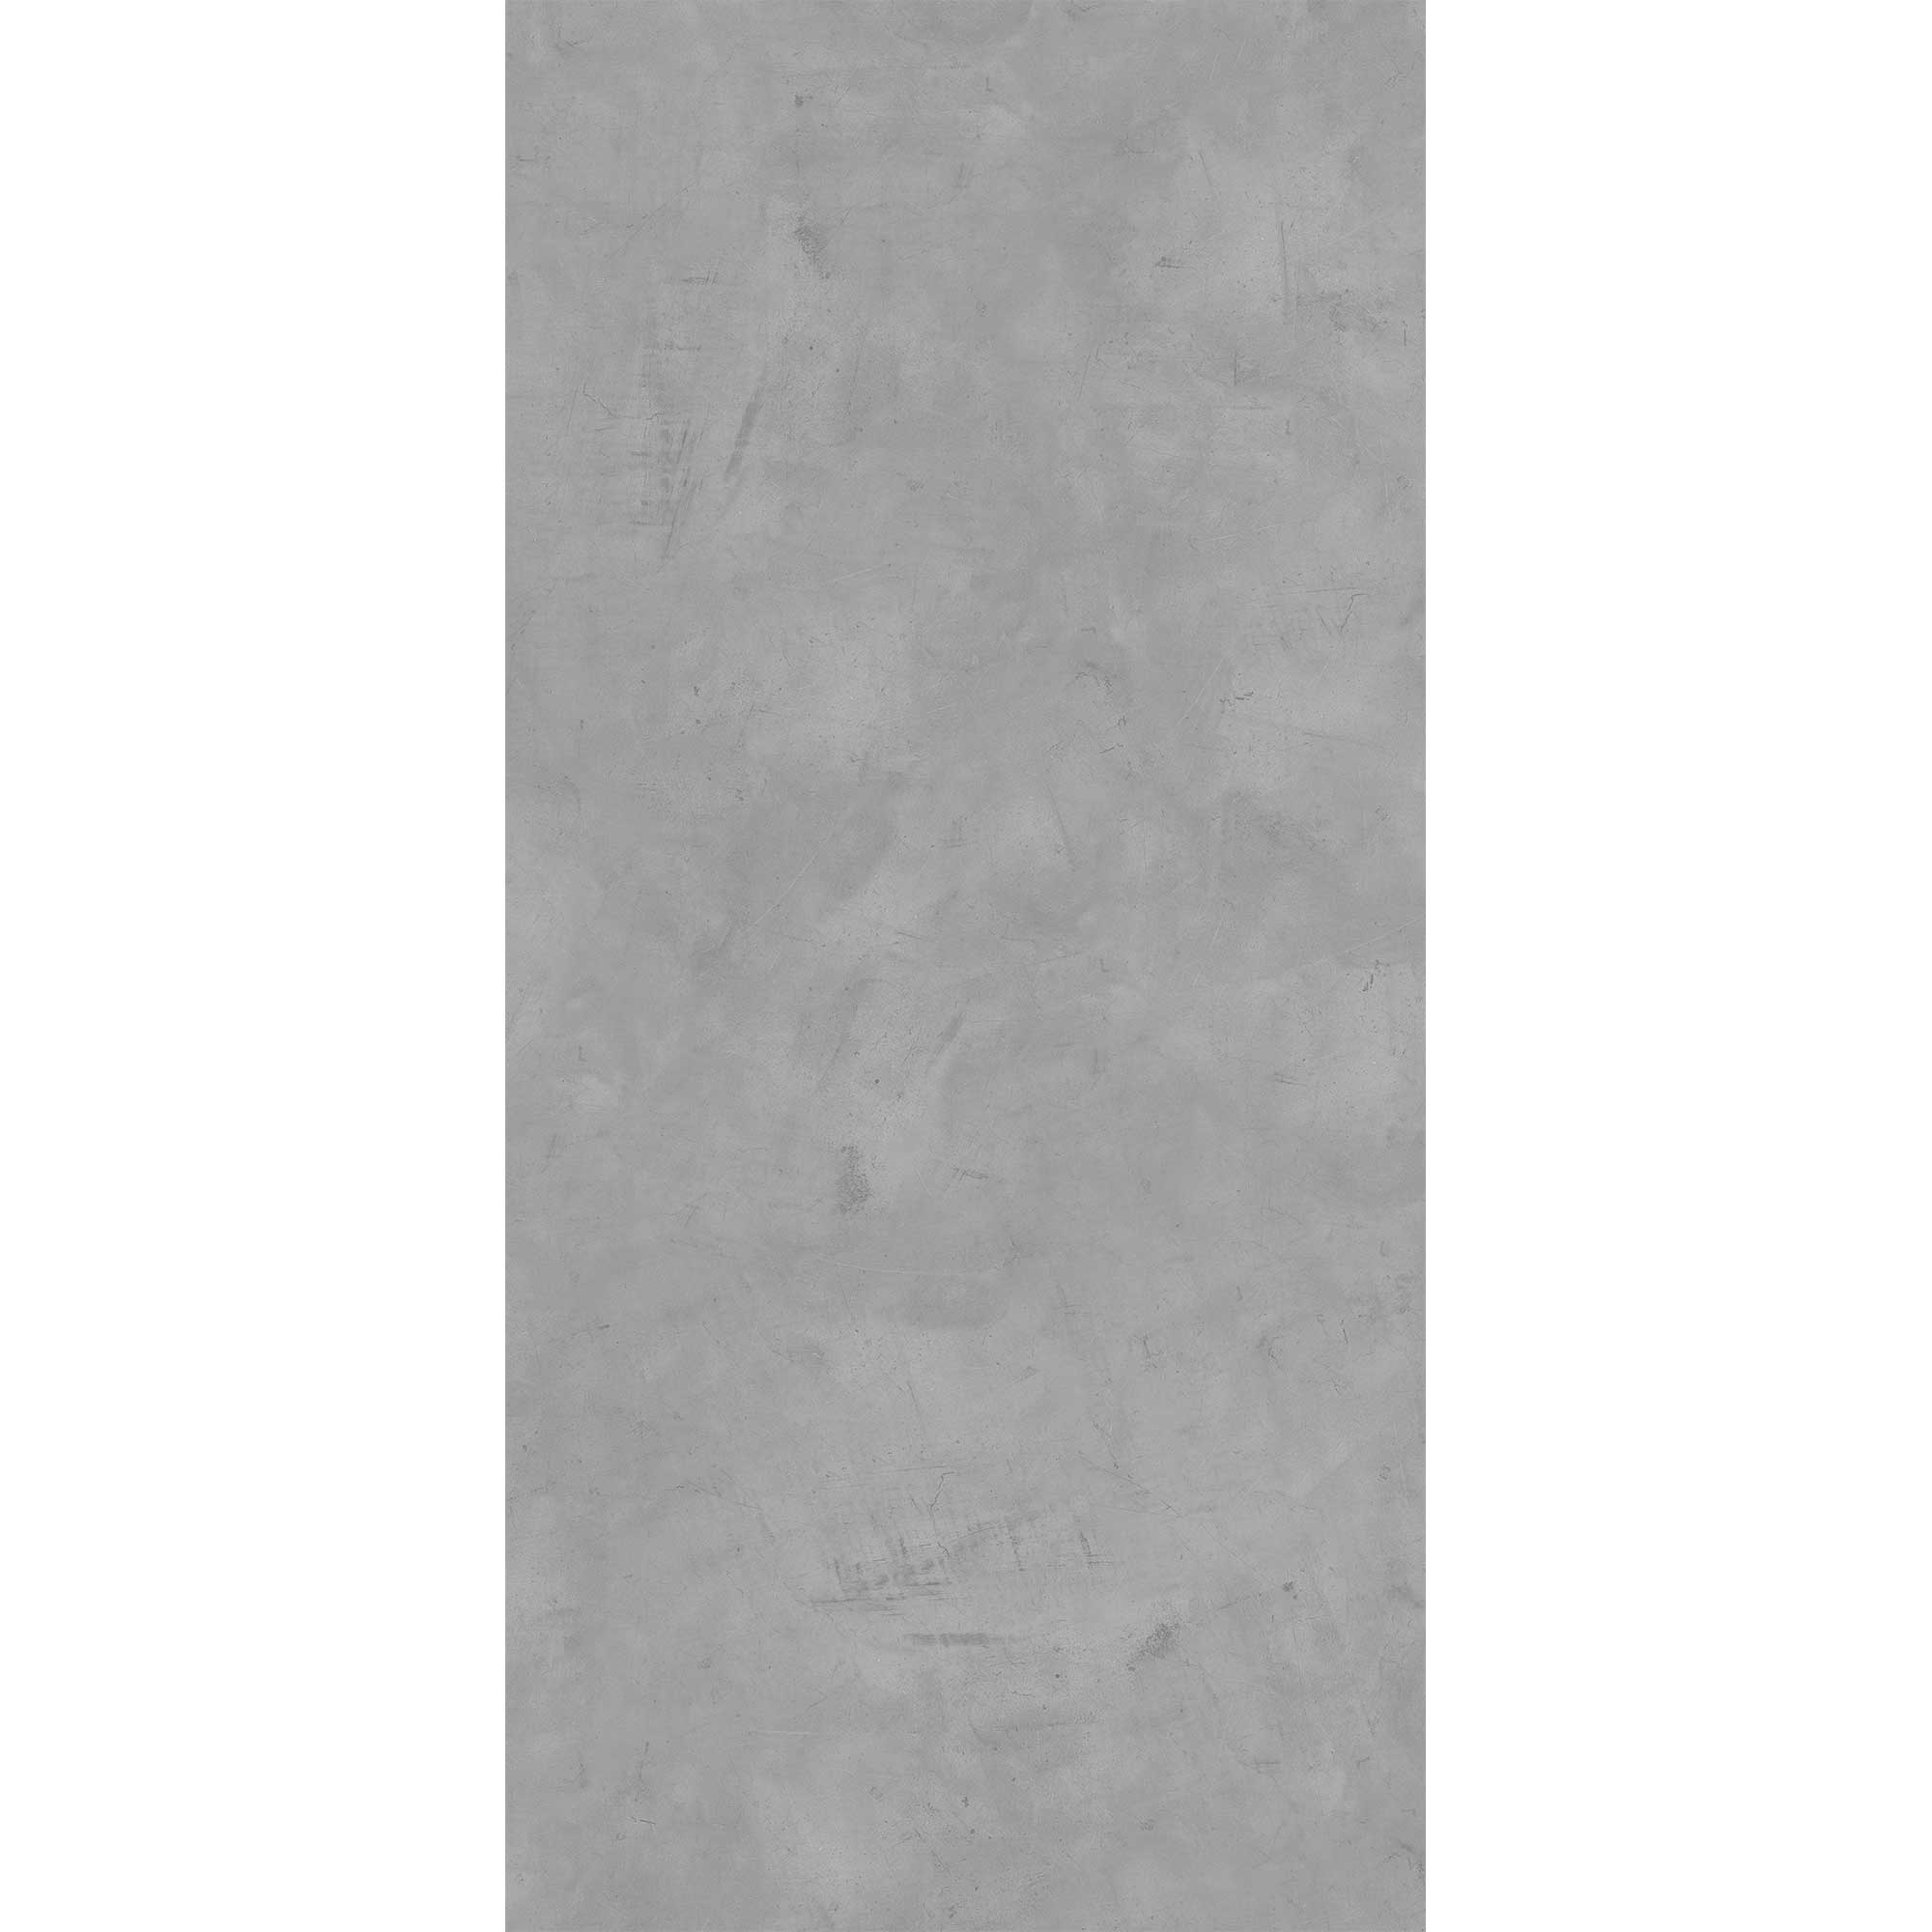 Duschrückwand 'Quick72' Softtouch Betonoptik grau 100 x 255 cm + product picture